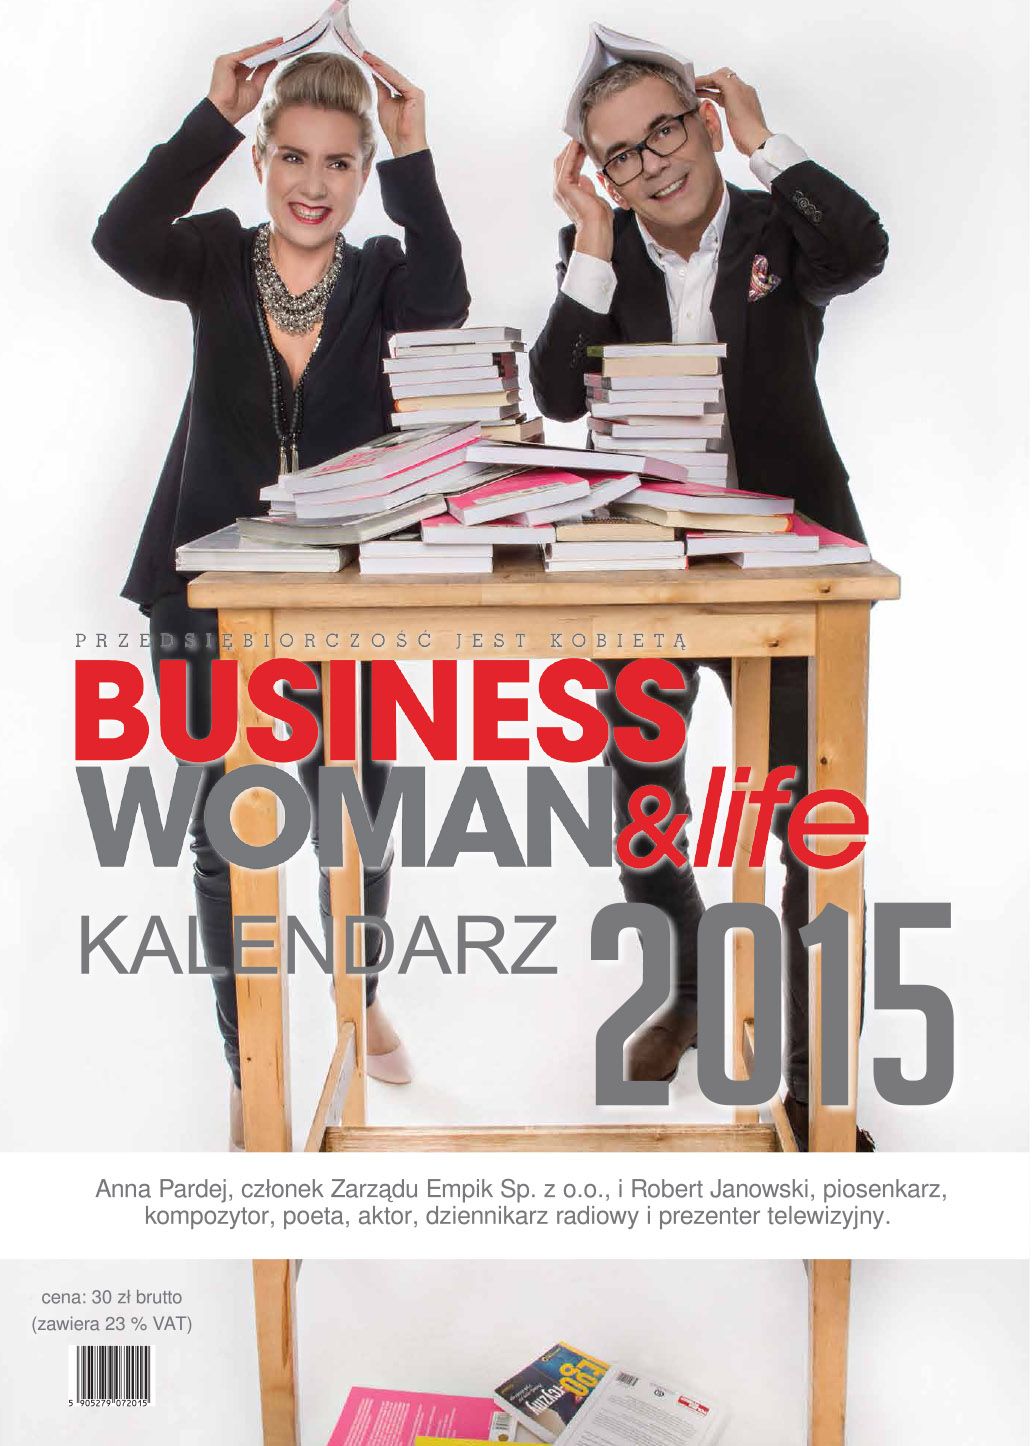 Relacja z premiery i gali kalendarza Businesswoman & life 2015 na rzecz Stowarzyszenia SOS Wioski Dziecięce